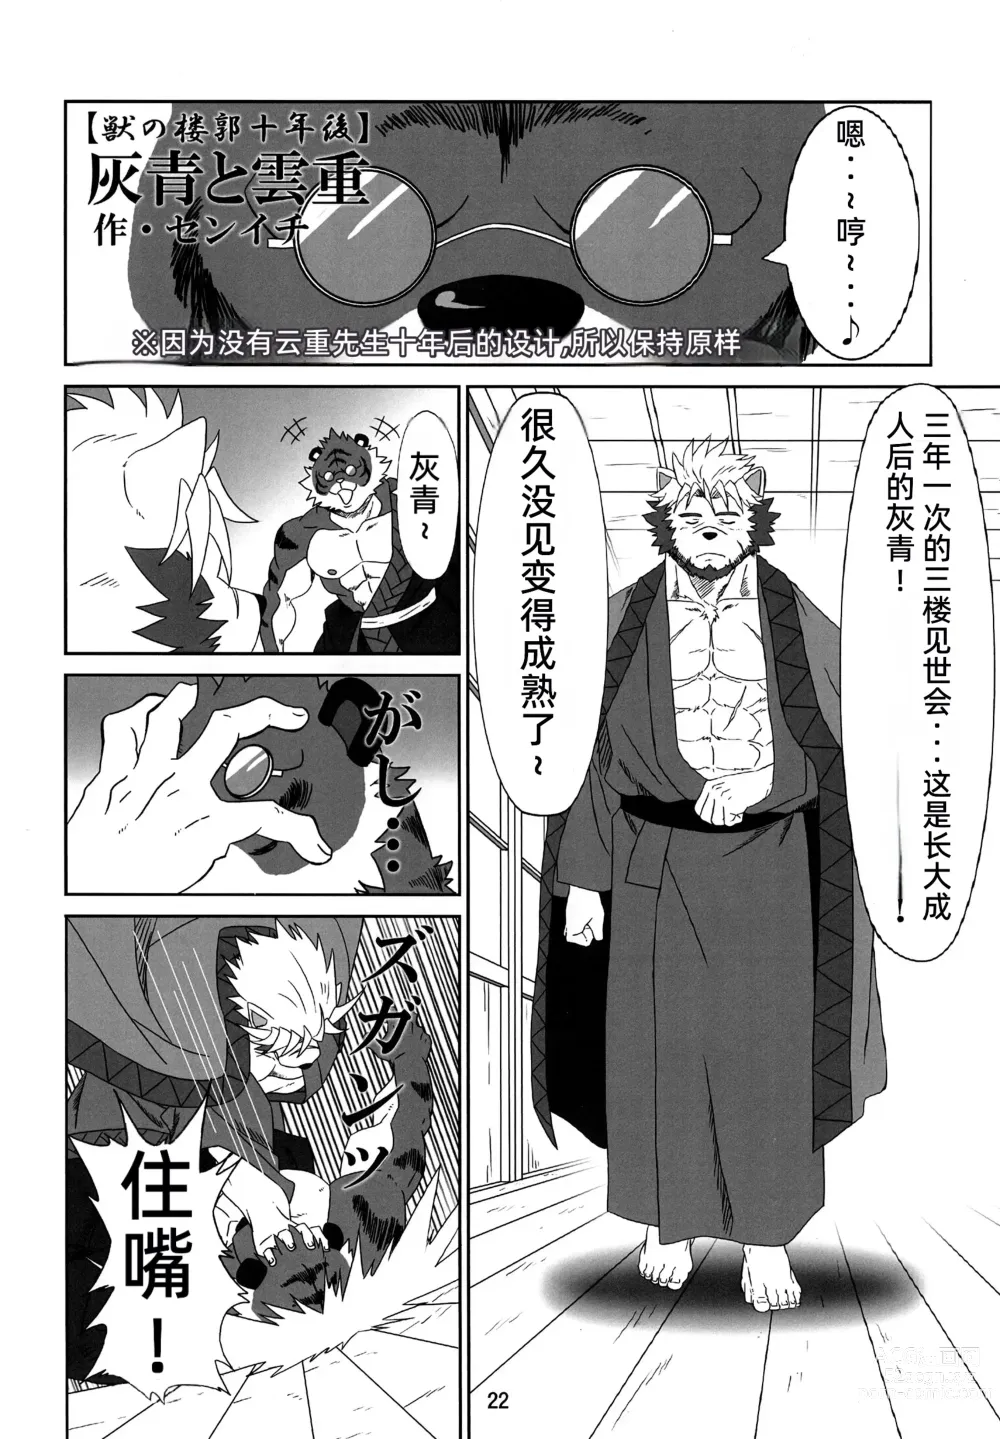 Page 21 of doujinshi Kemono no Roukaku - Utage